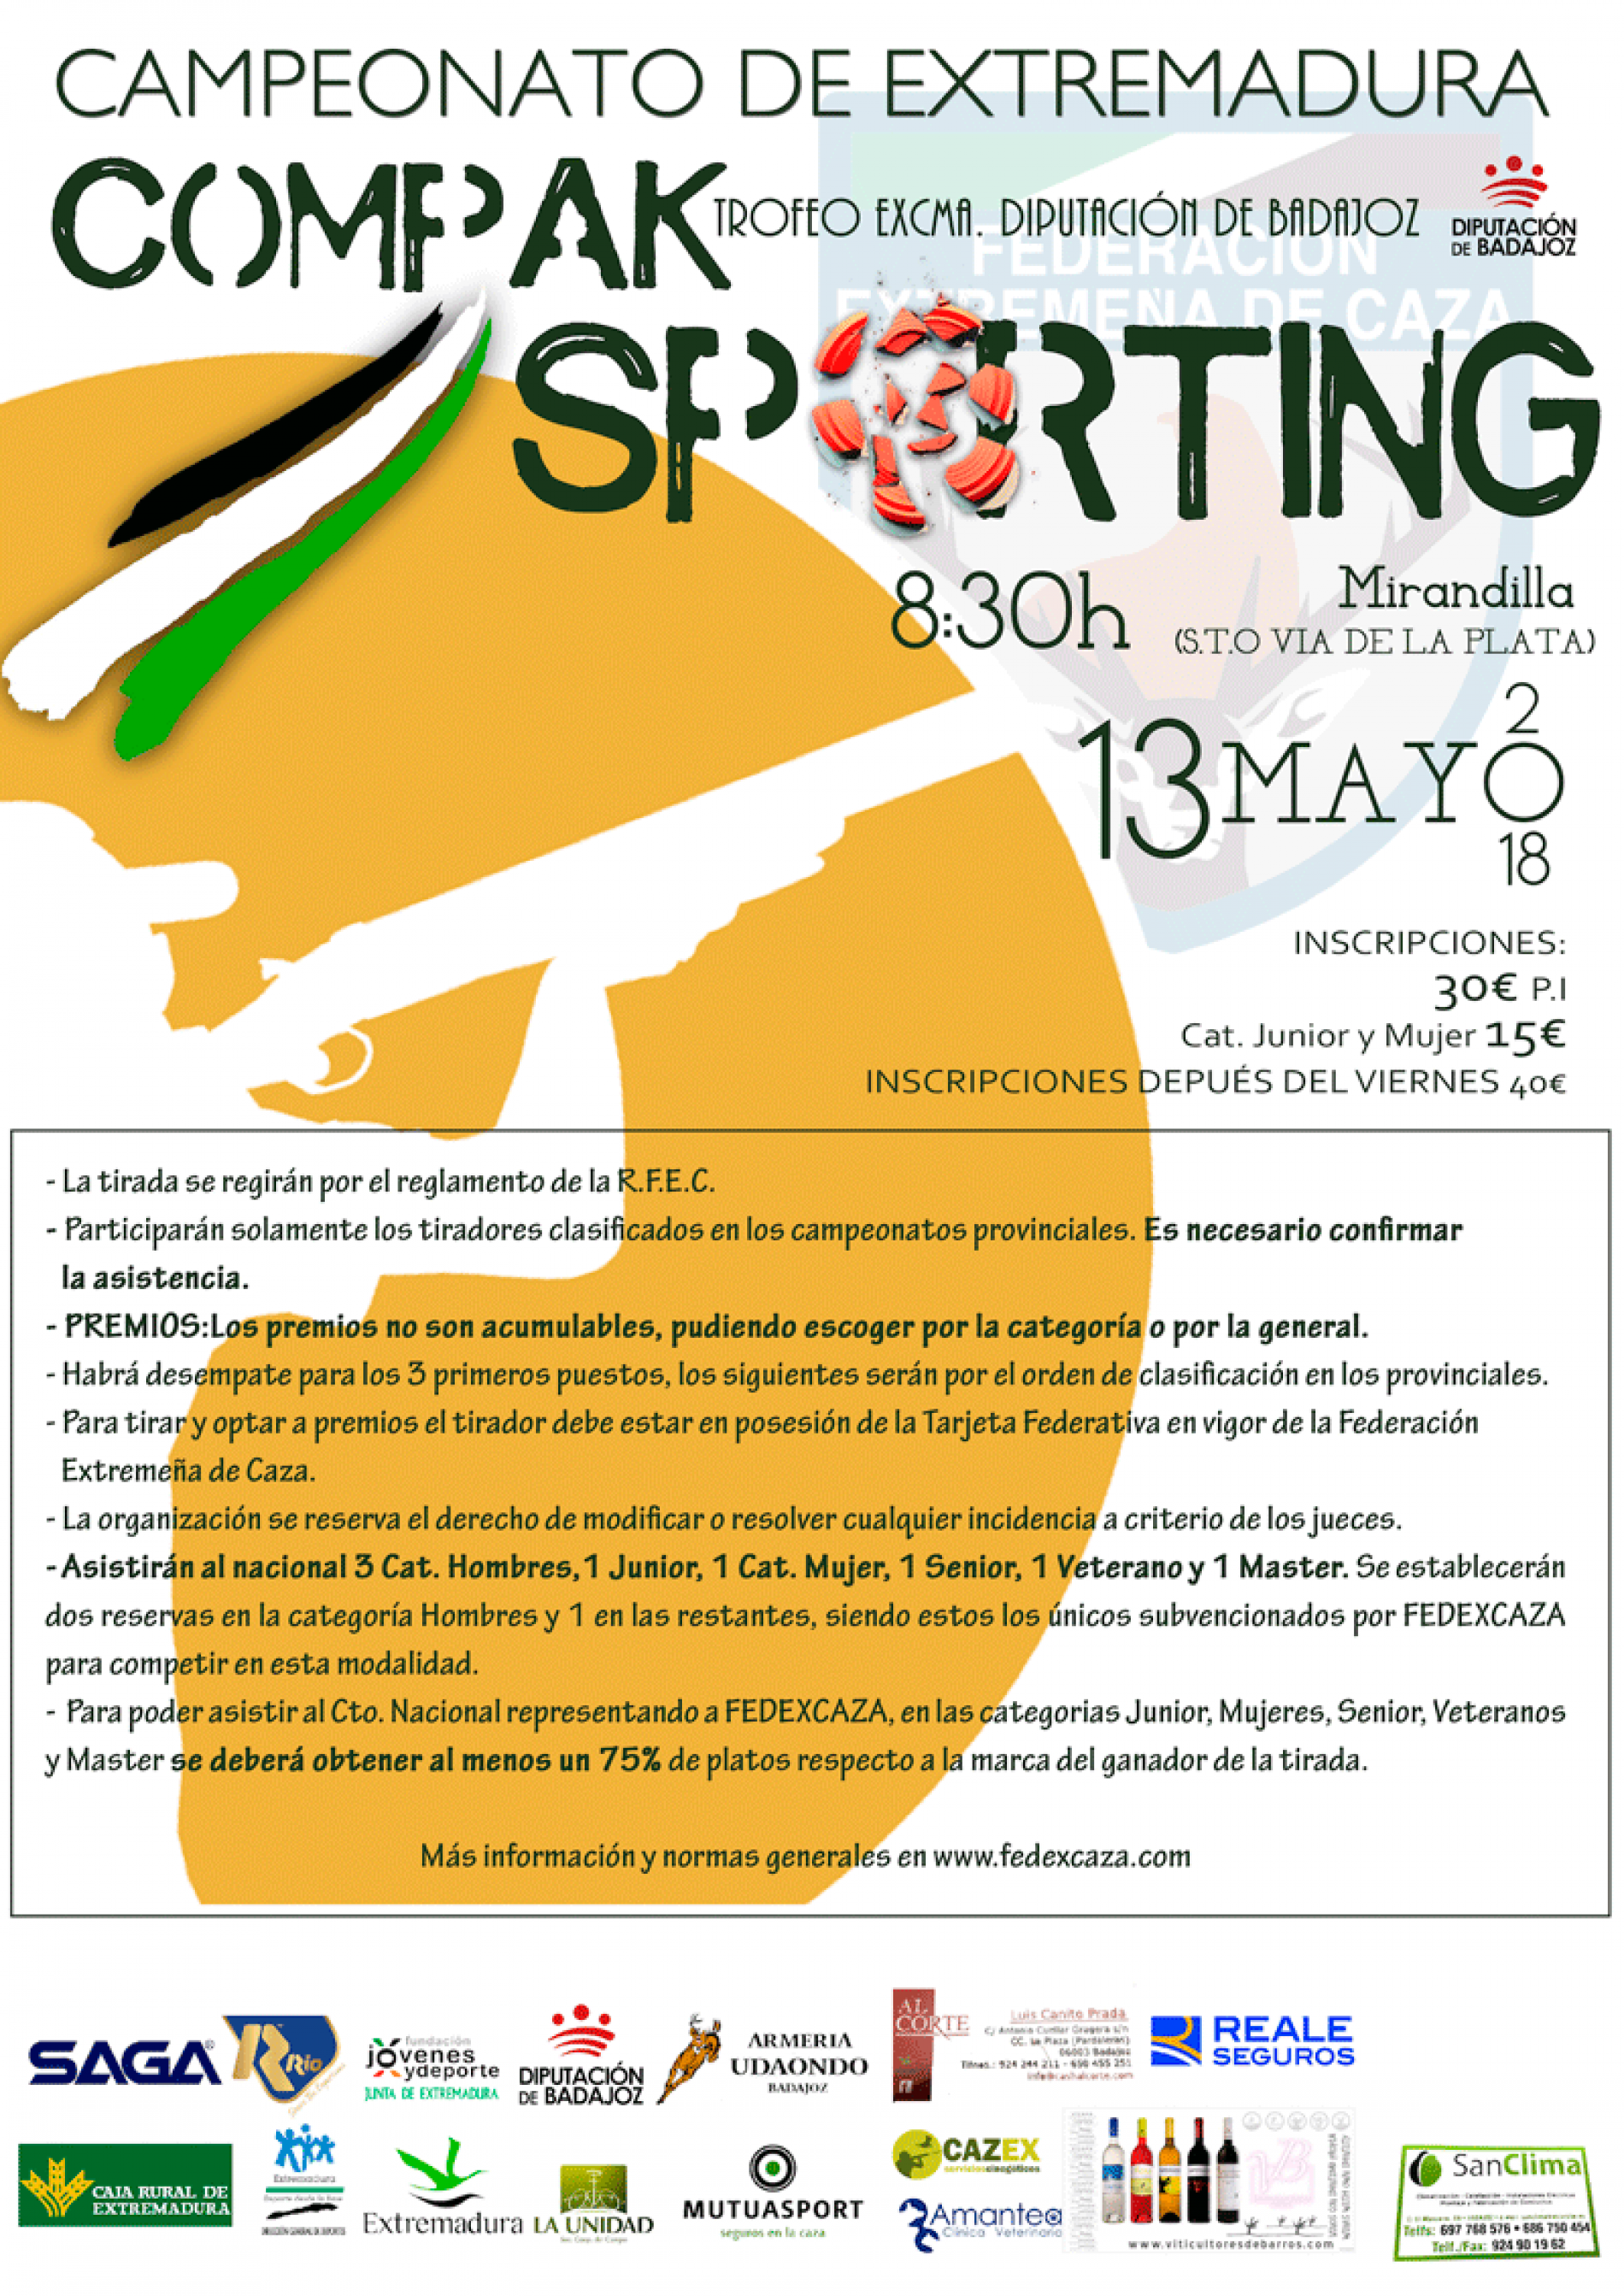 Campeonato de Extremadura de Compak Sporting el 13 de mayo en Mirandilla